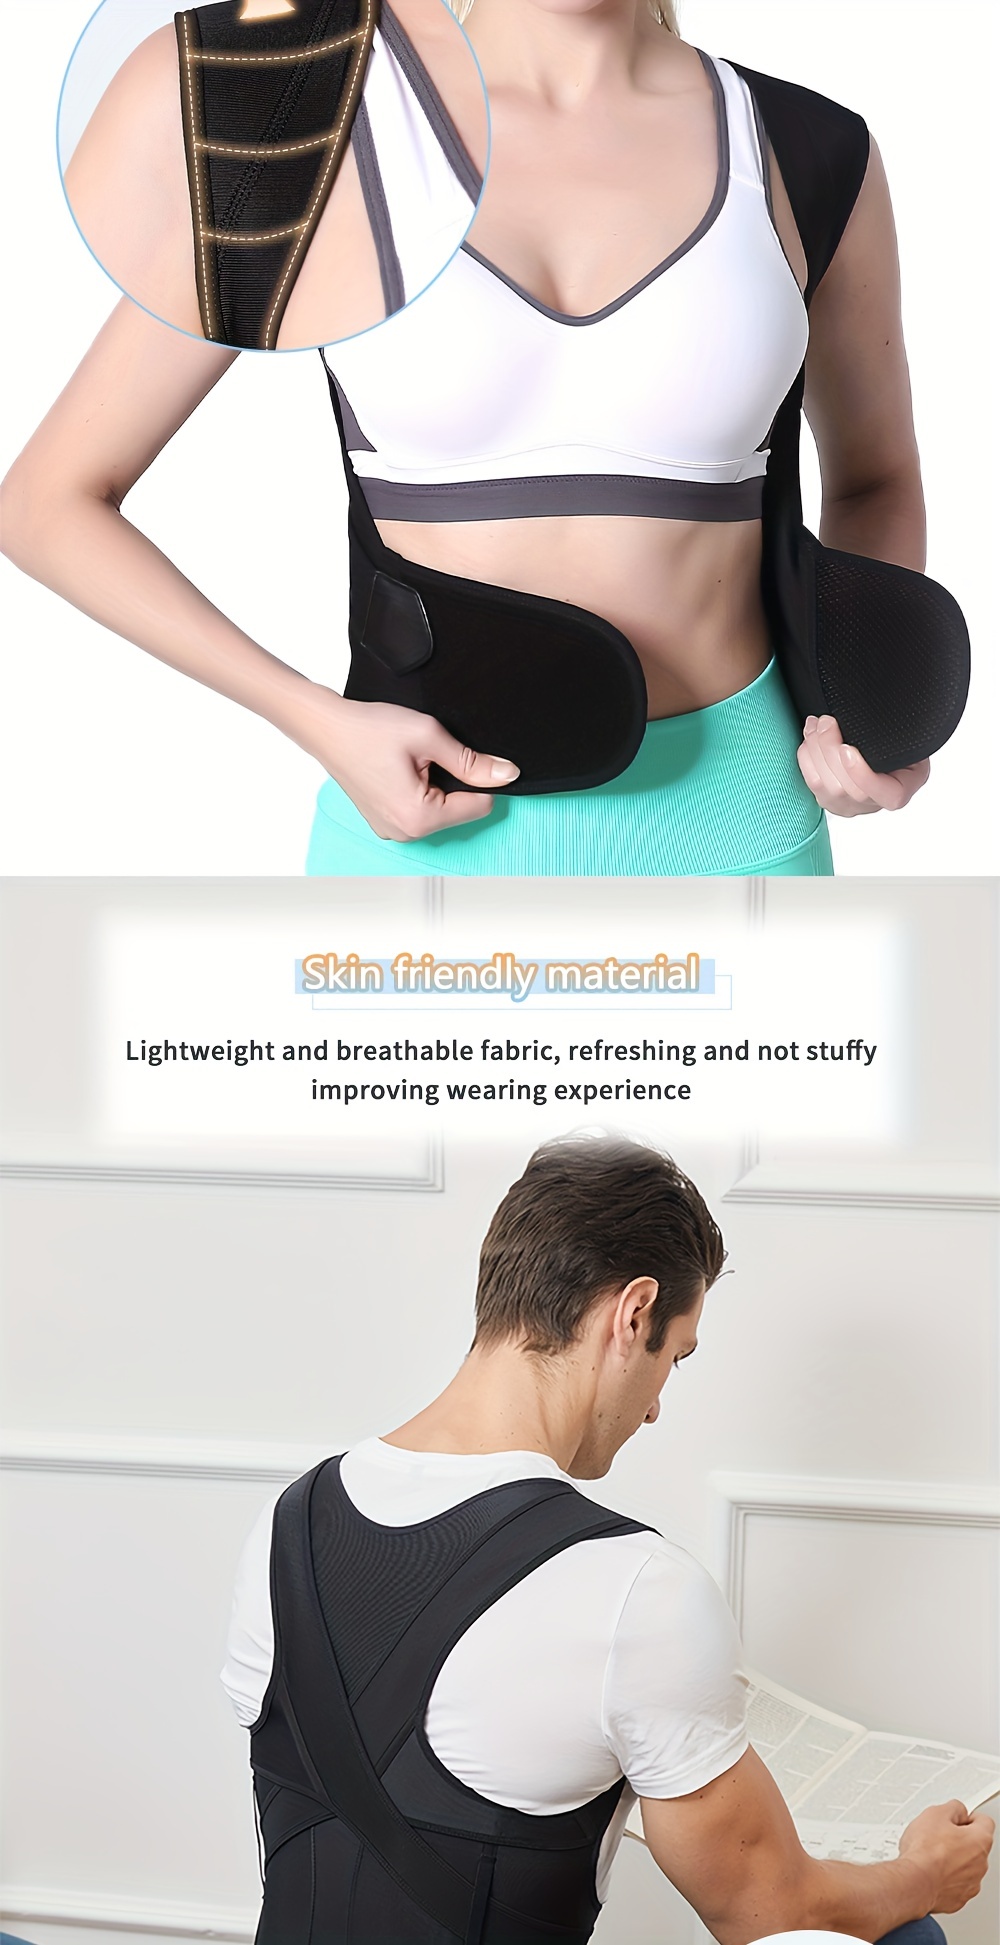 Posture Corrector For Women And Men Adjustable Upper Back Brace